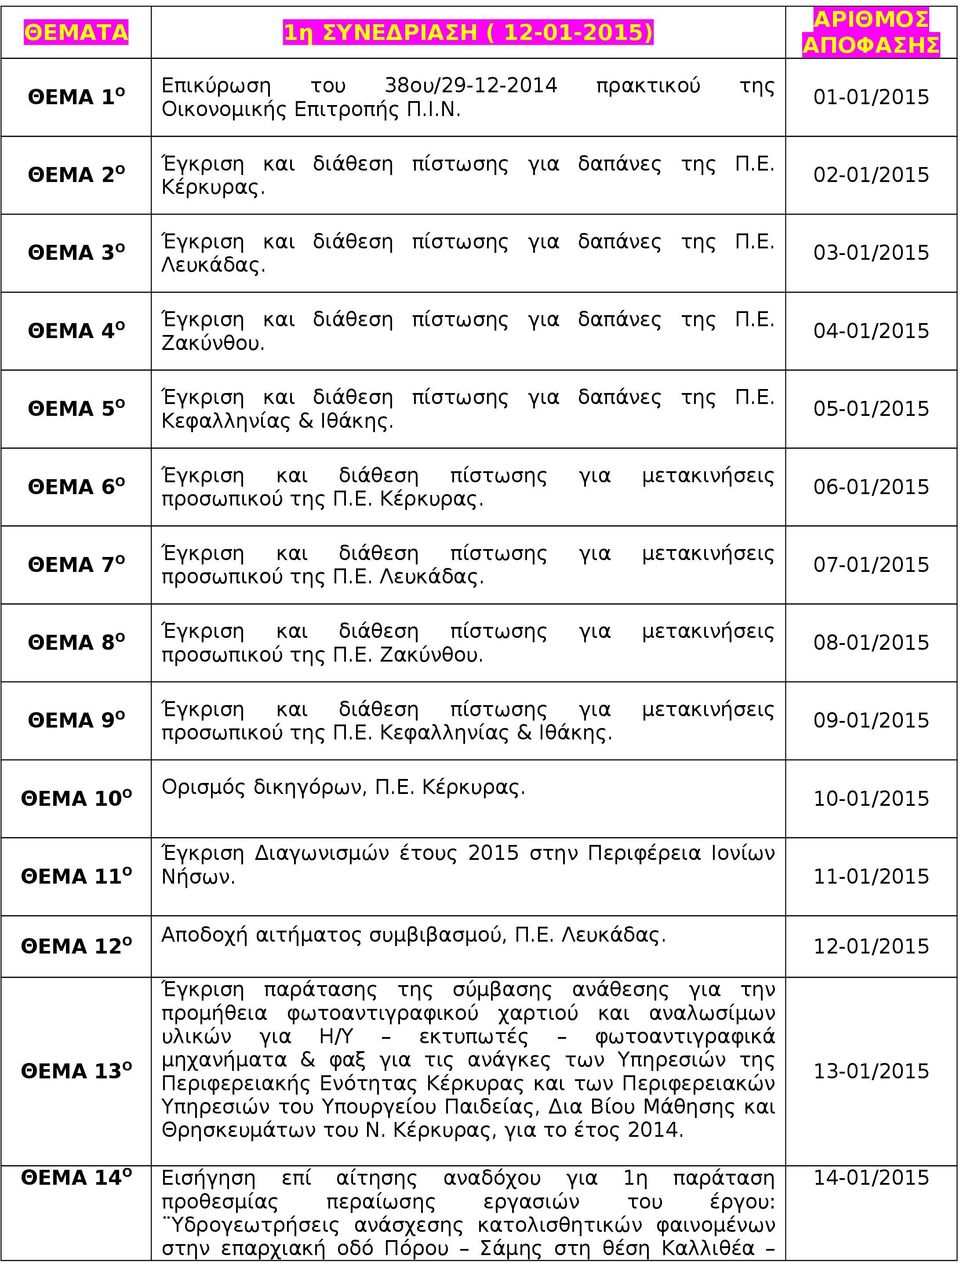 02-01/2015 03-01/2015 04-01/2015 05-01/2015 ΘΕΜΑ 6 Ο Έγκριση και διάθεση πίστωσης για μετακινήσεις προσωπικού της Π.Ε. Κέρκυρας.